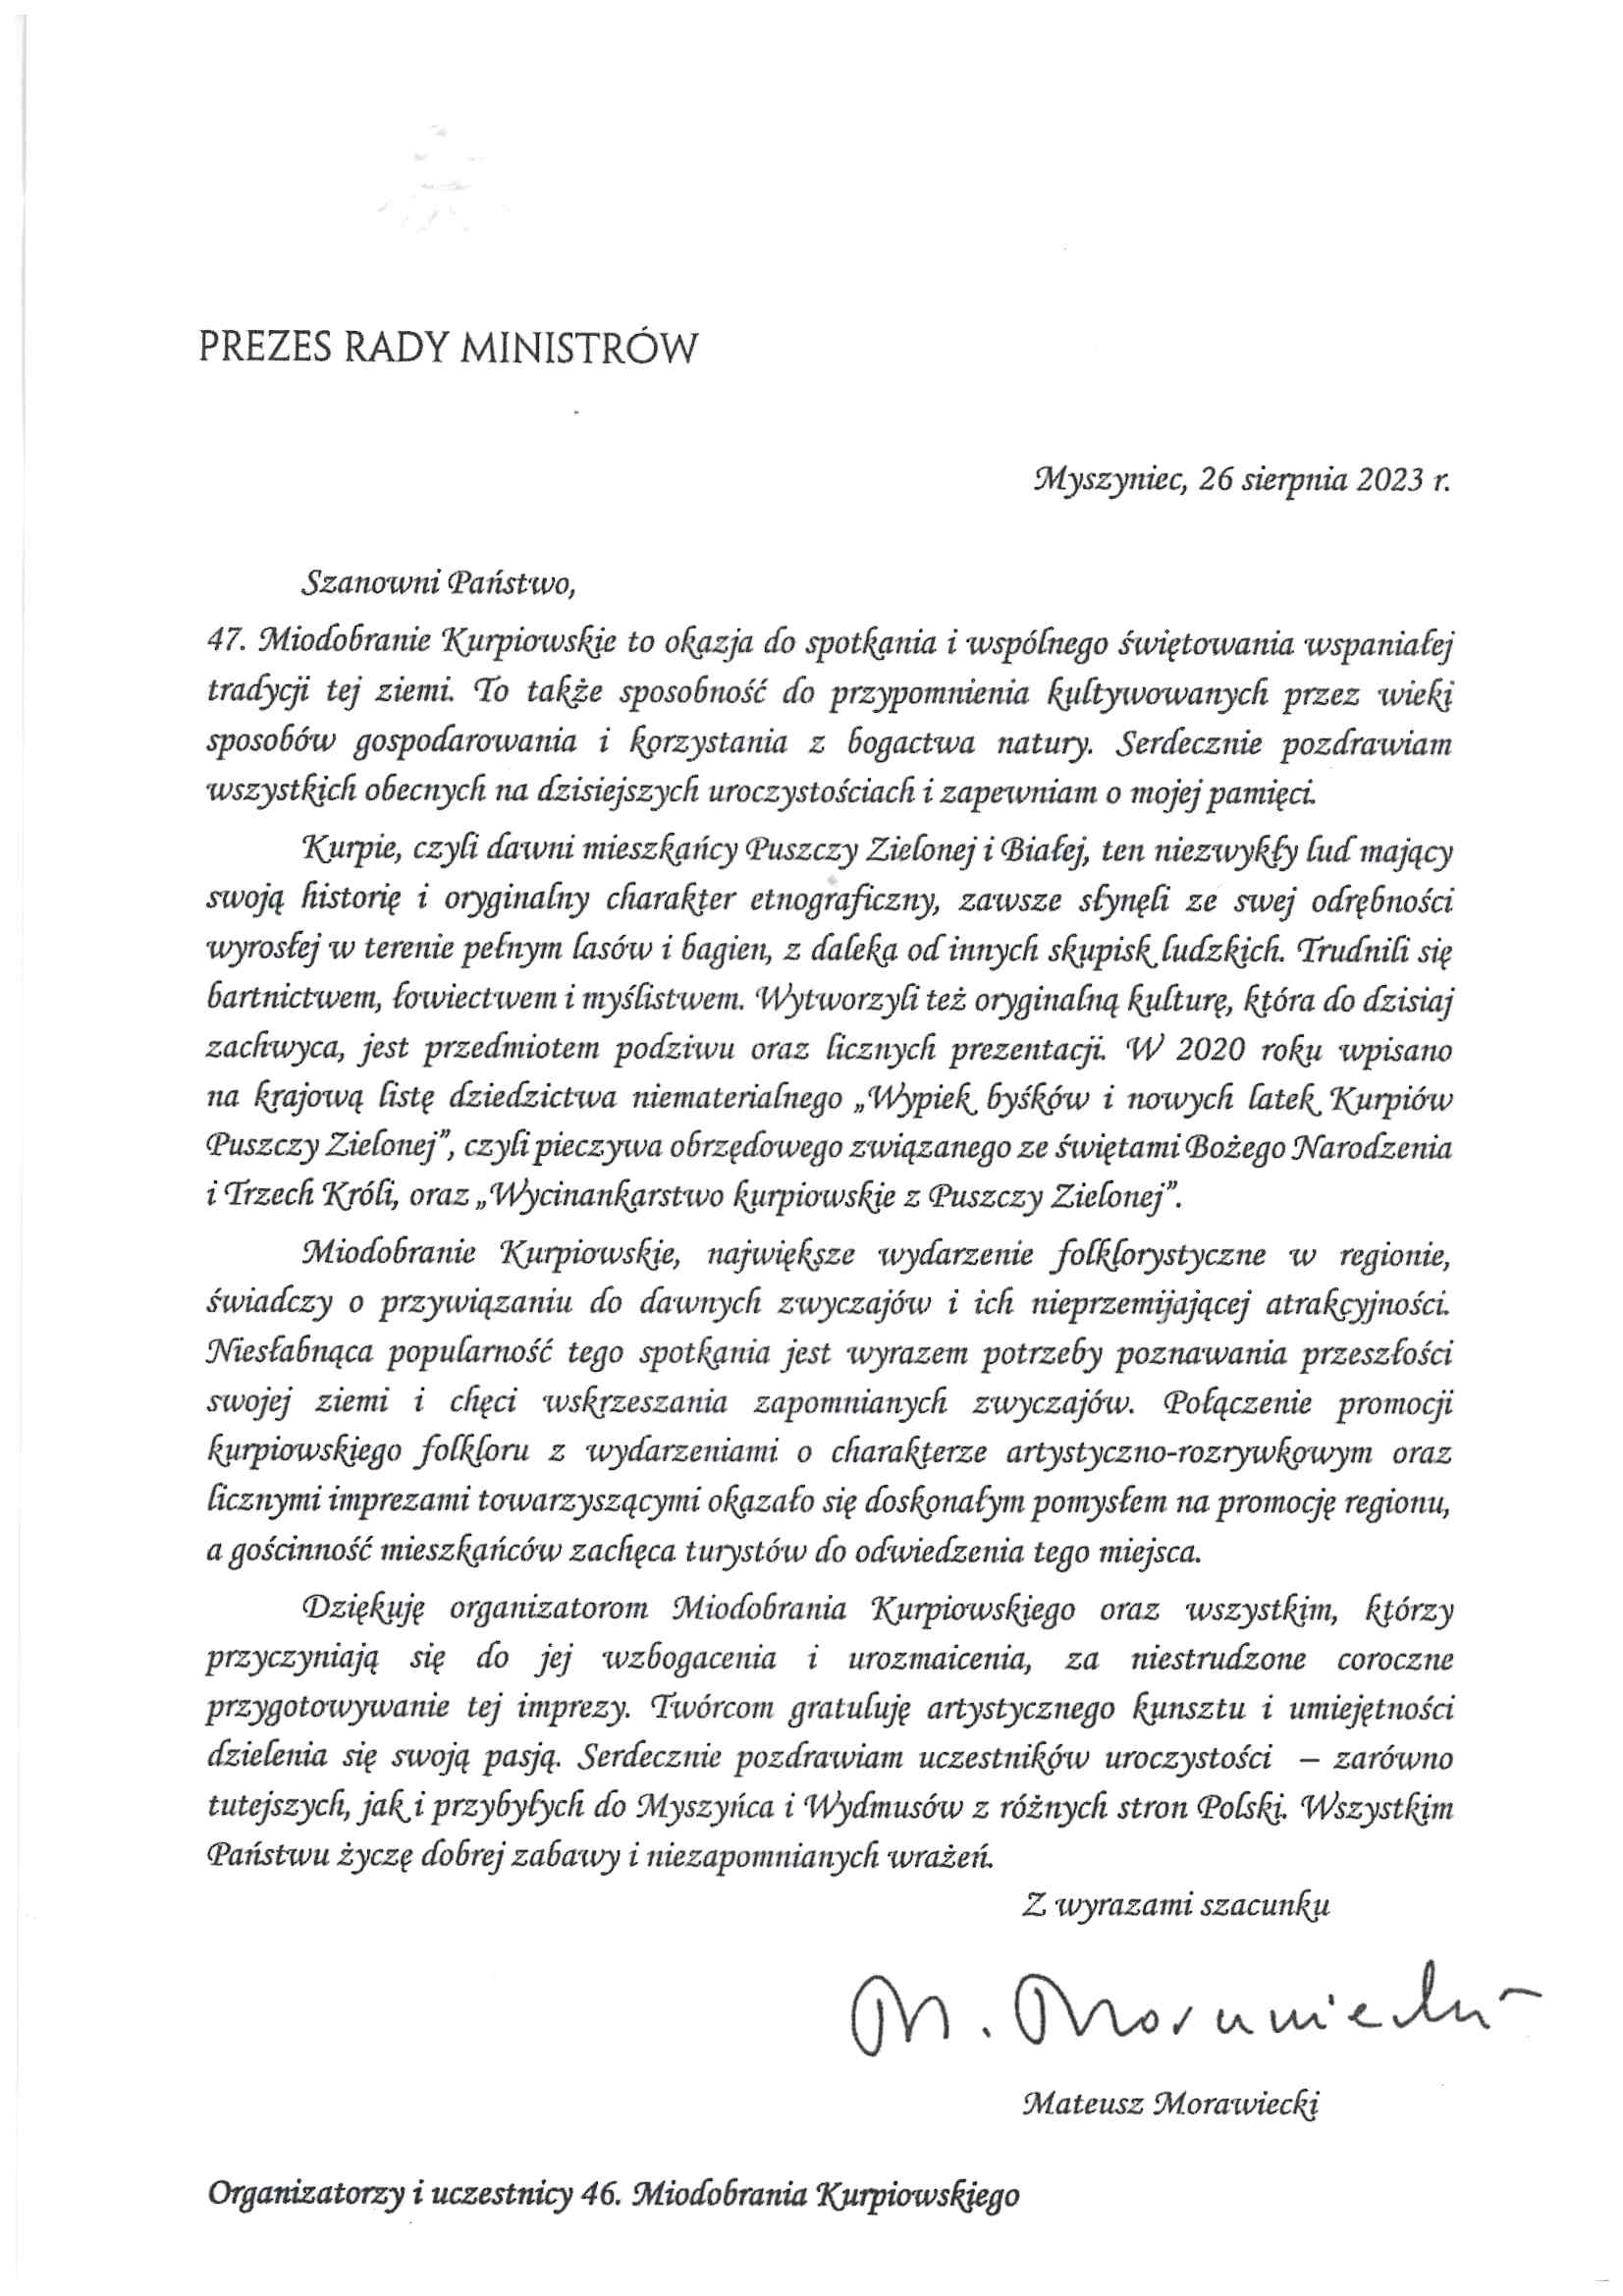 Pismo Prezesa Rady Ministrów do uczestników Miodobrania